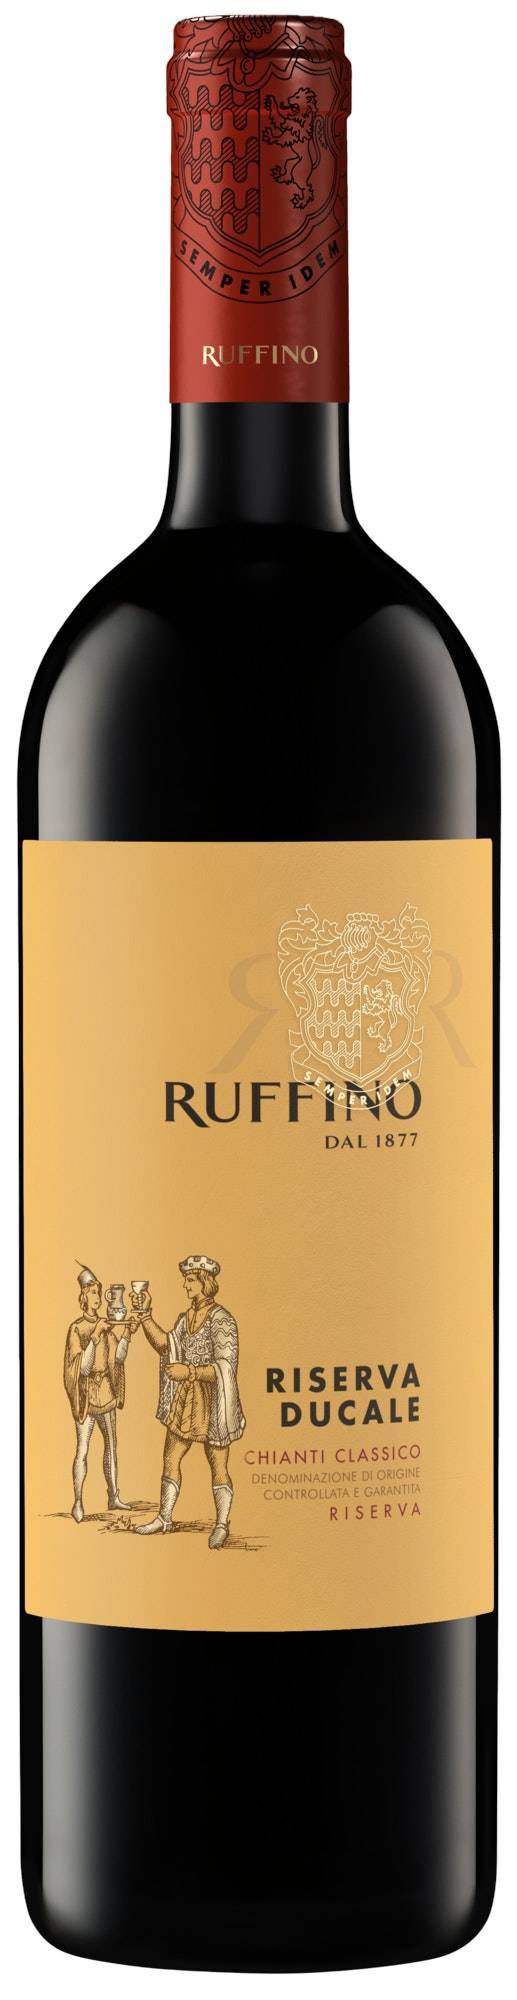 Ruffino Riserva Ducale Chianti Classico Docg Sangiovese Red Blend Italian Red Wine (750ml bottle)